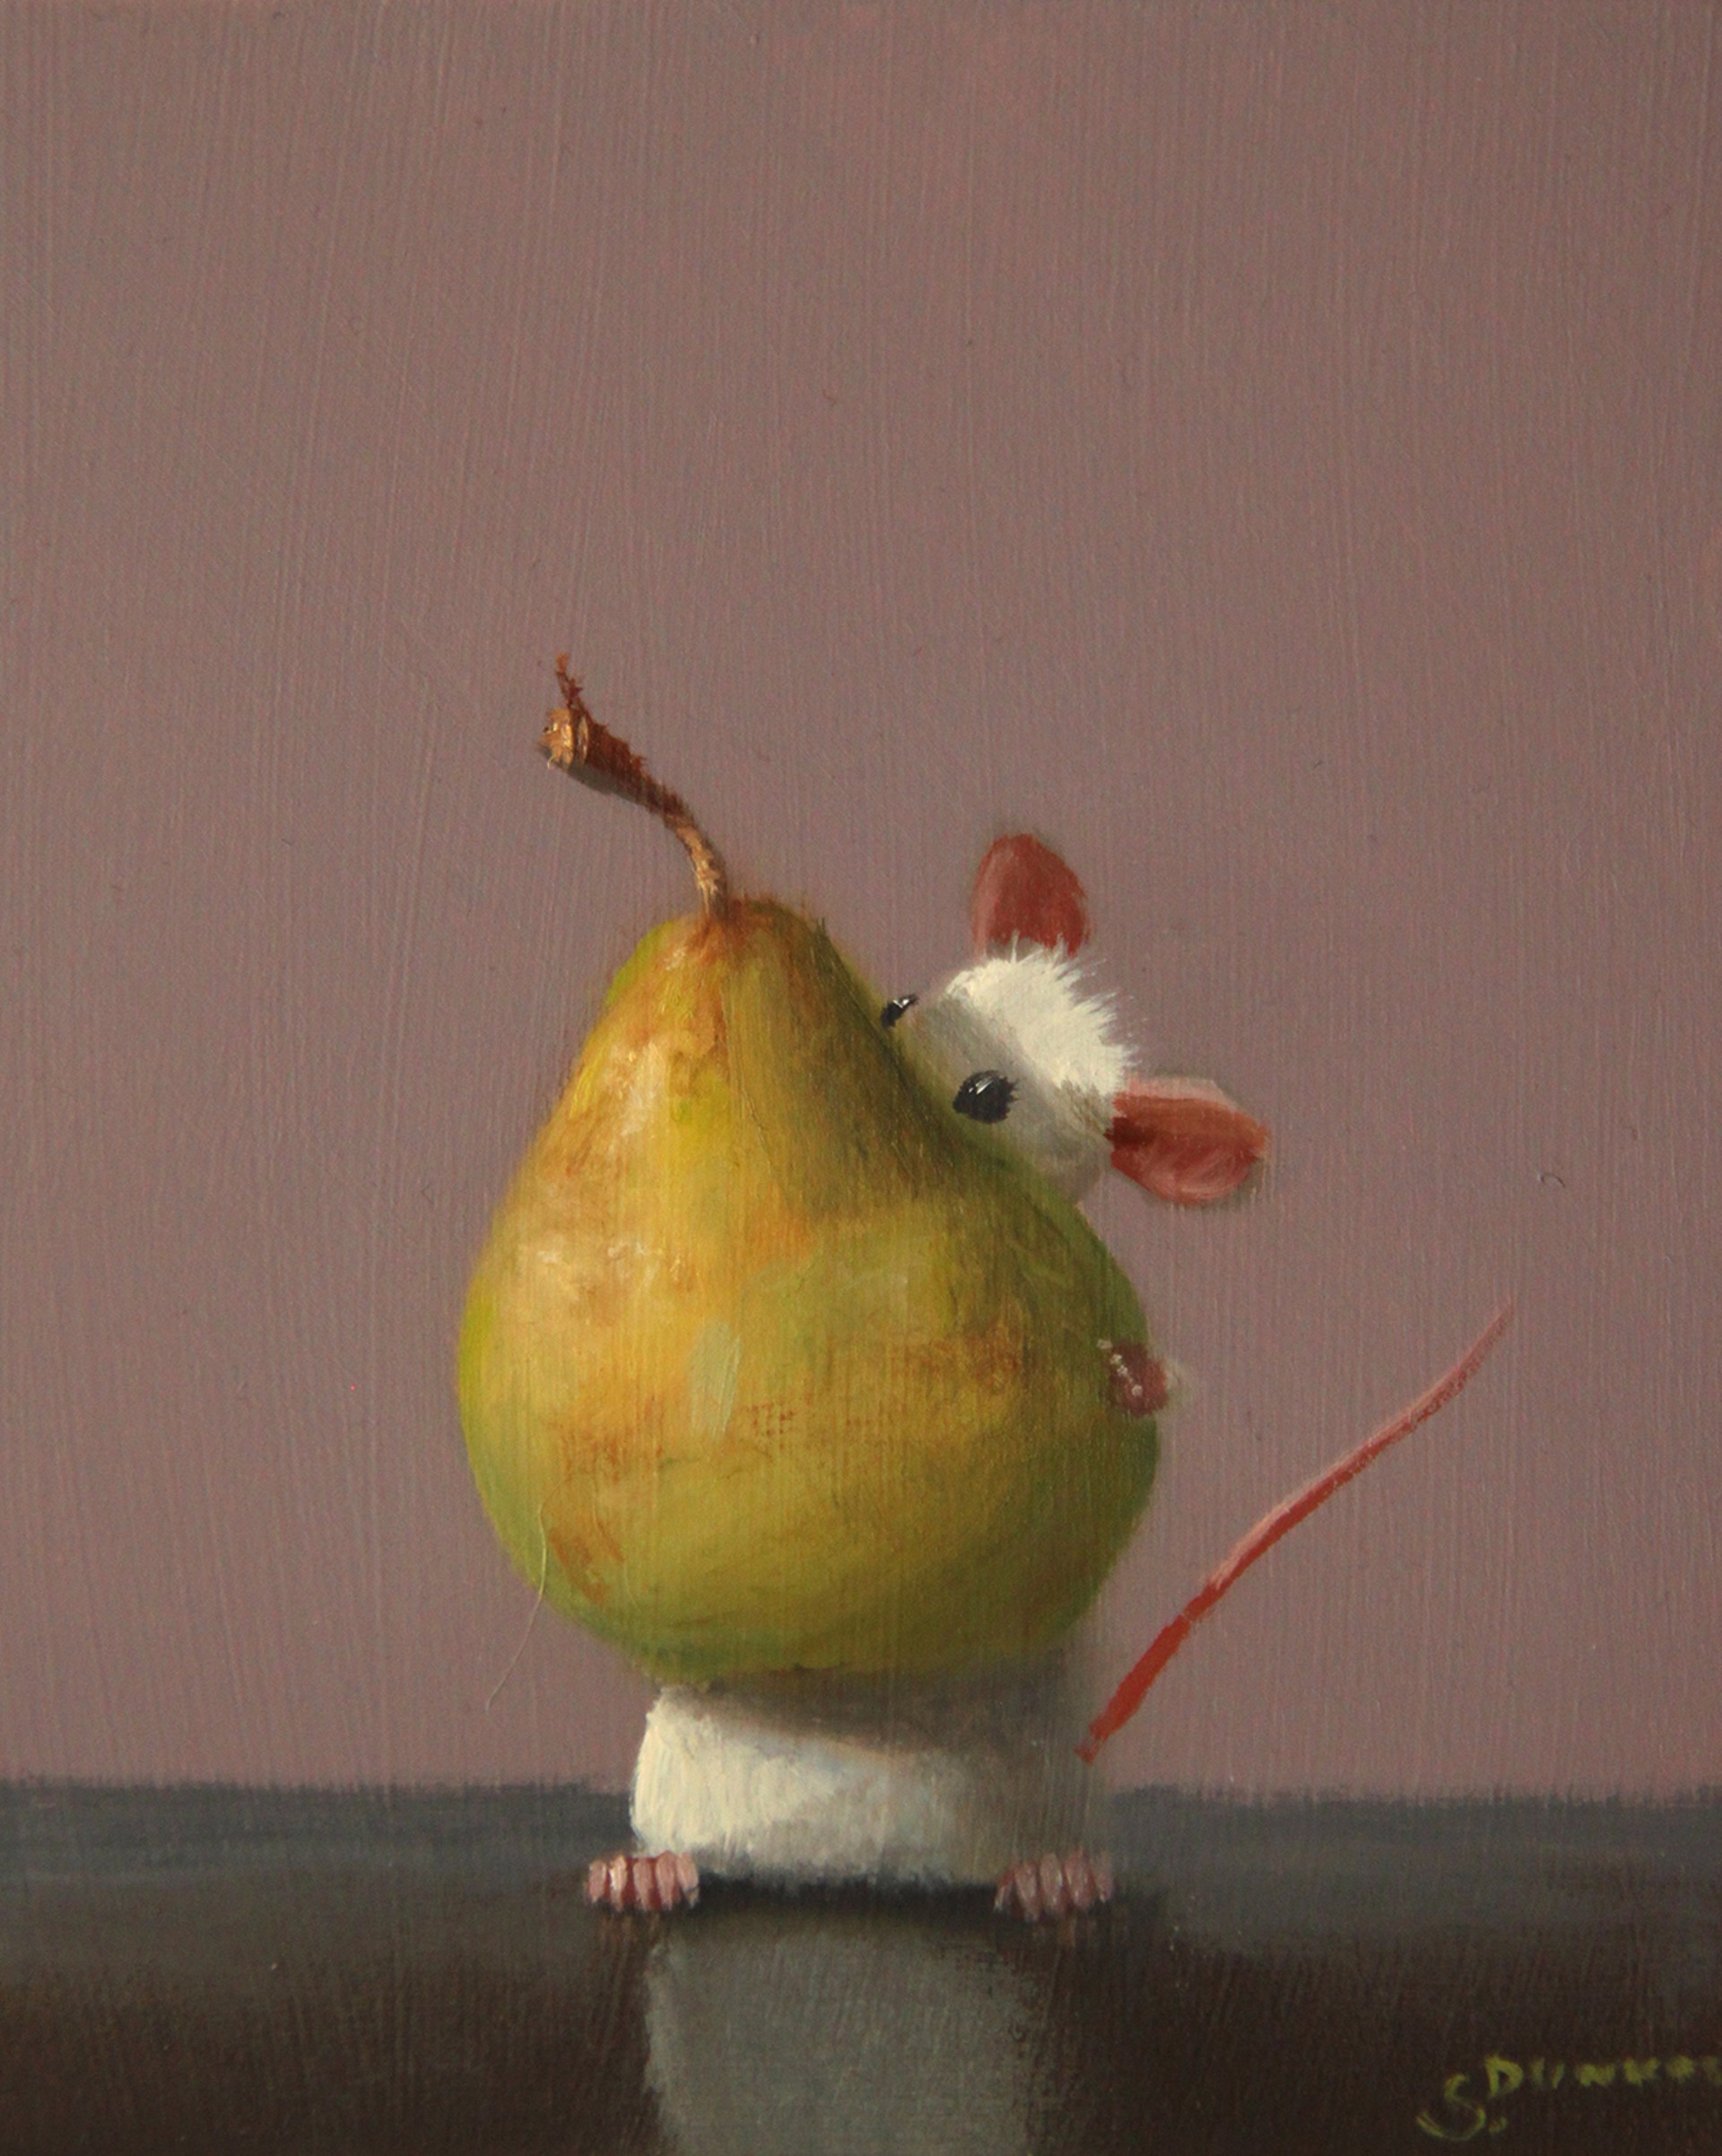 Best Pear by Stuart Dunkel